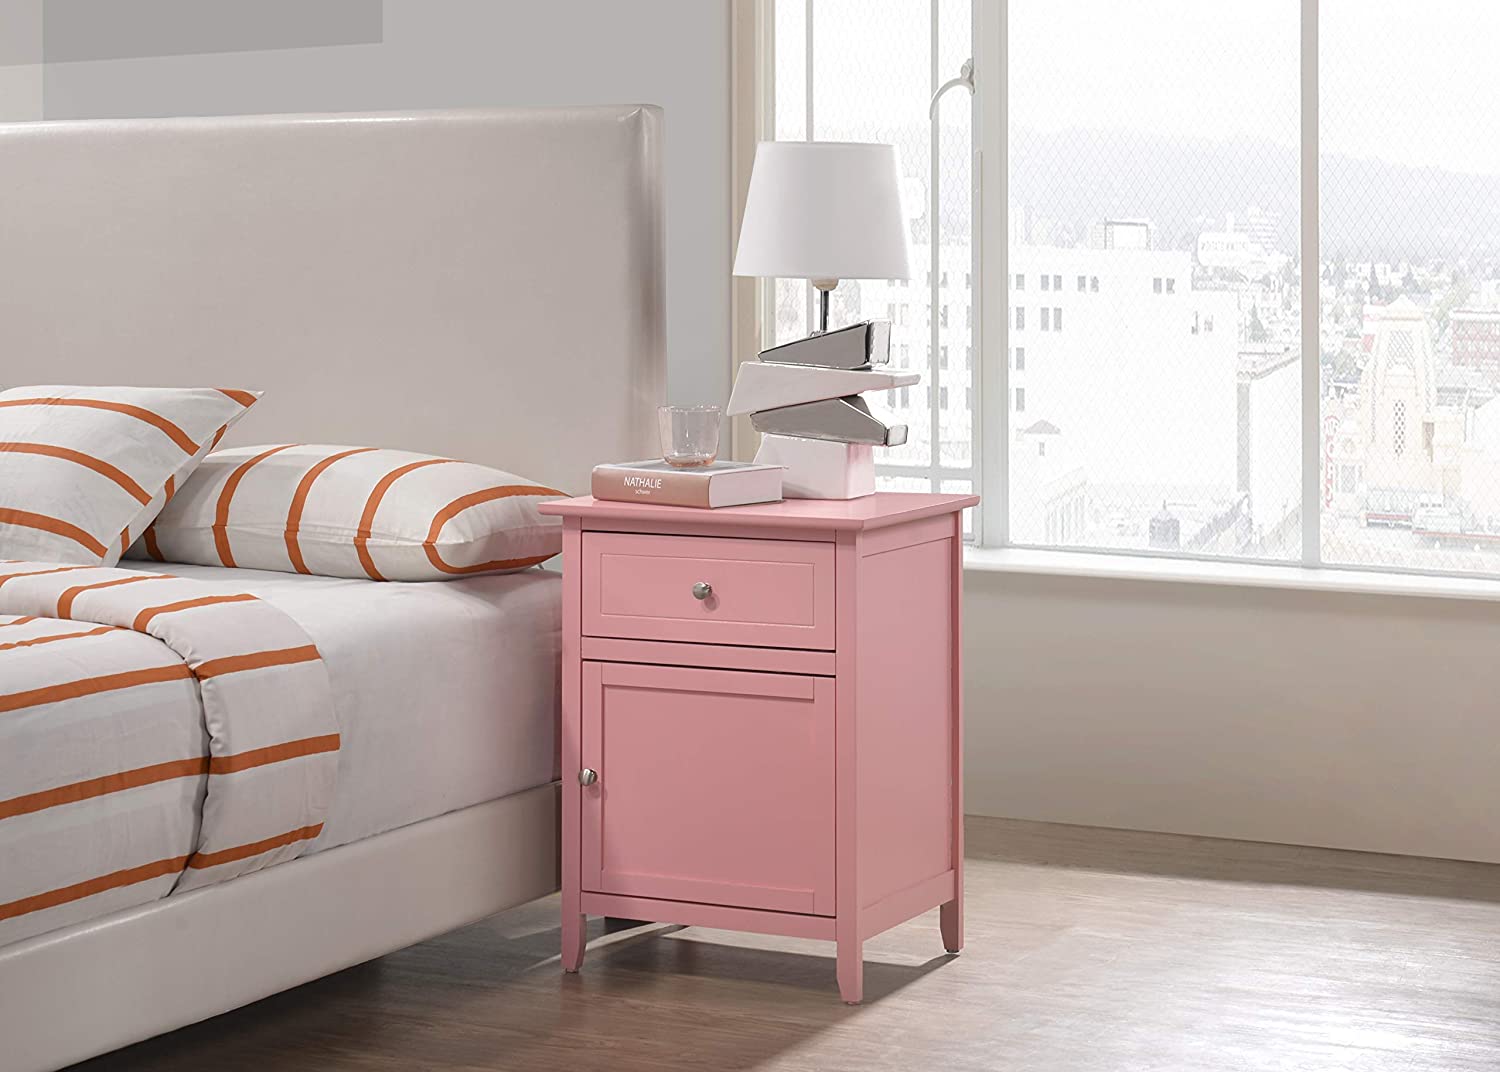 Glory Furniture 1 Drawer /1 Door Nightstand, Pink